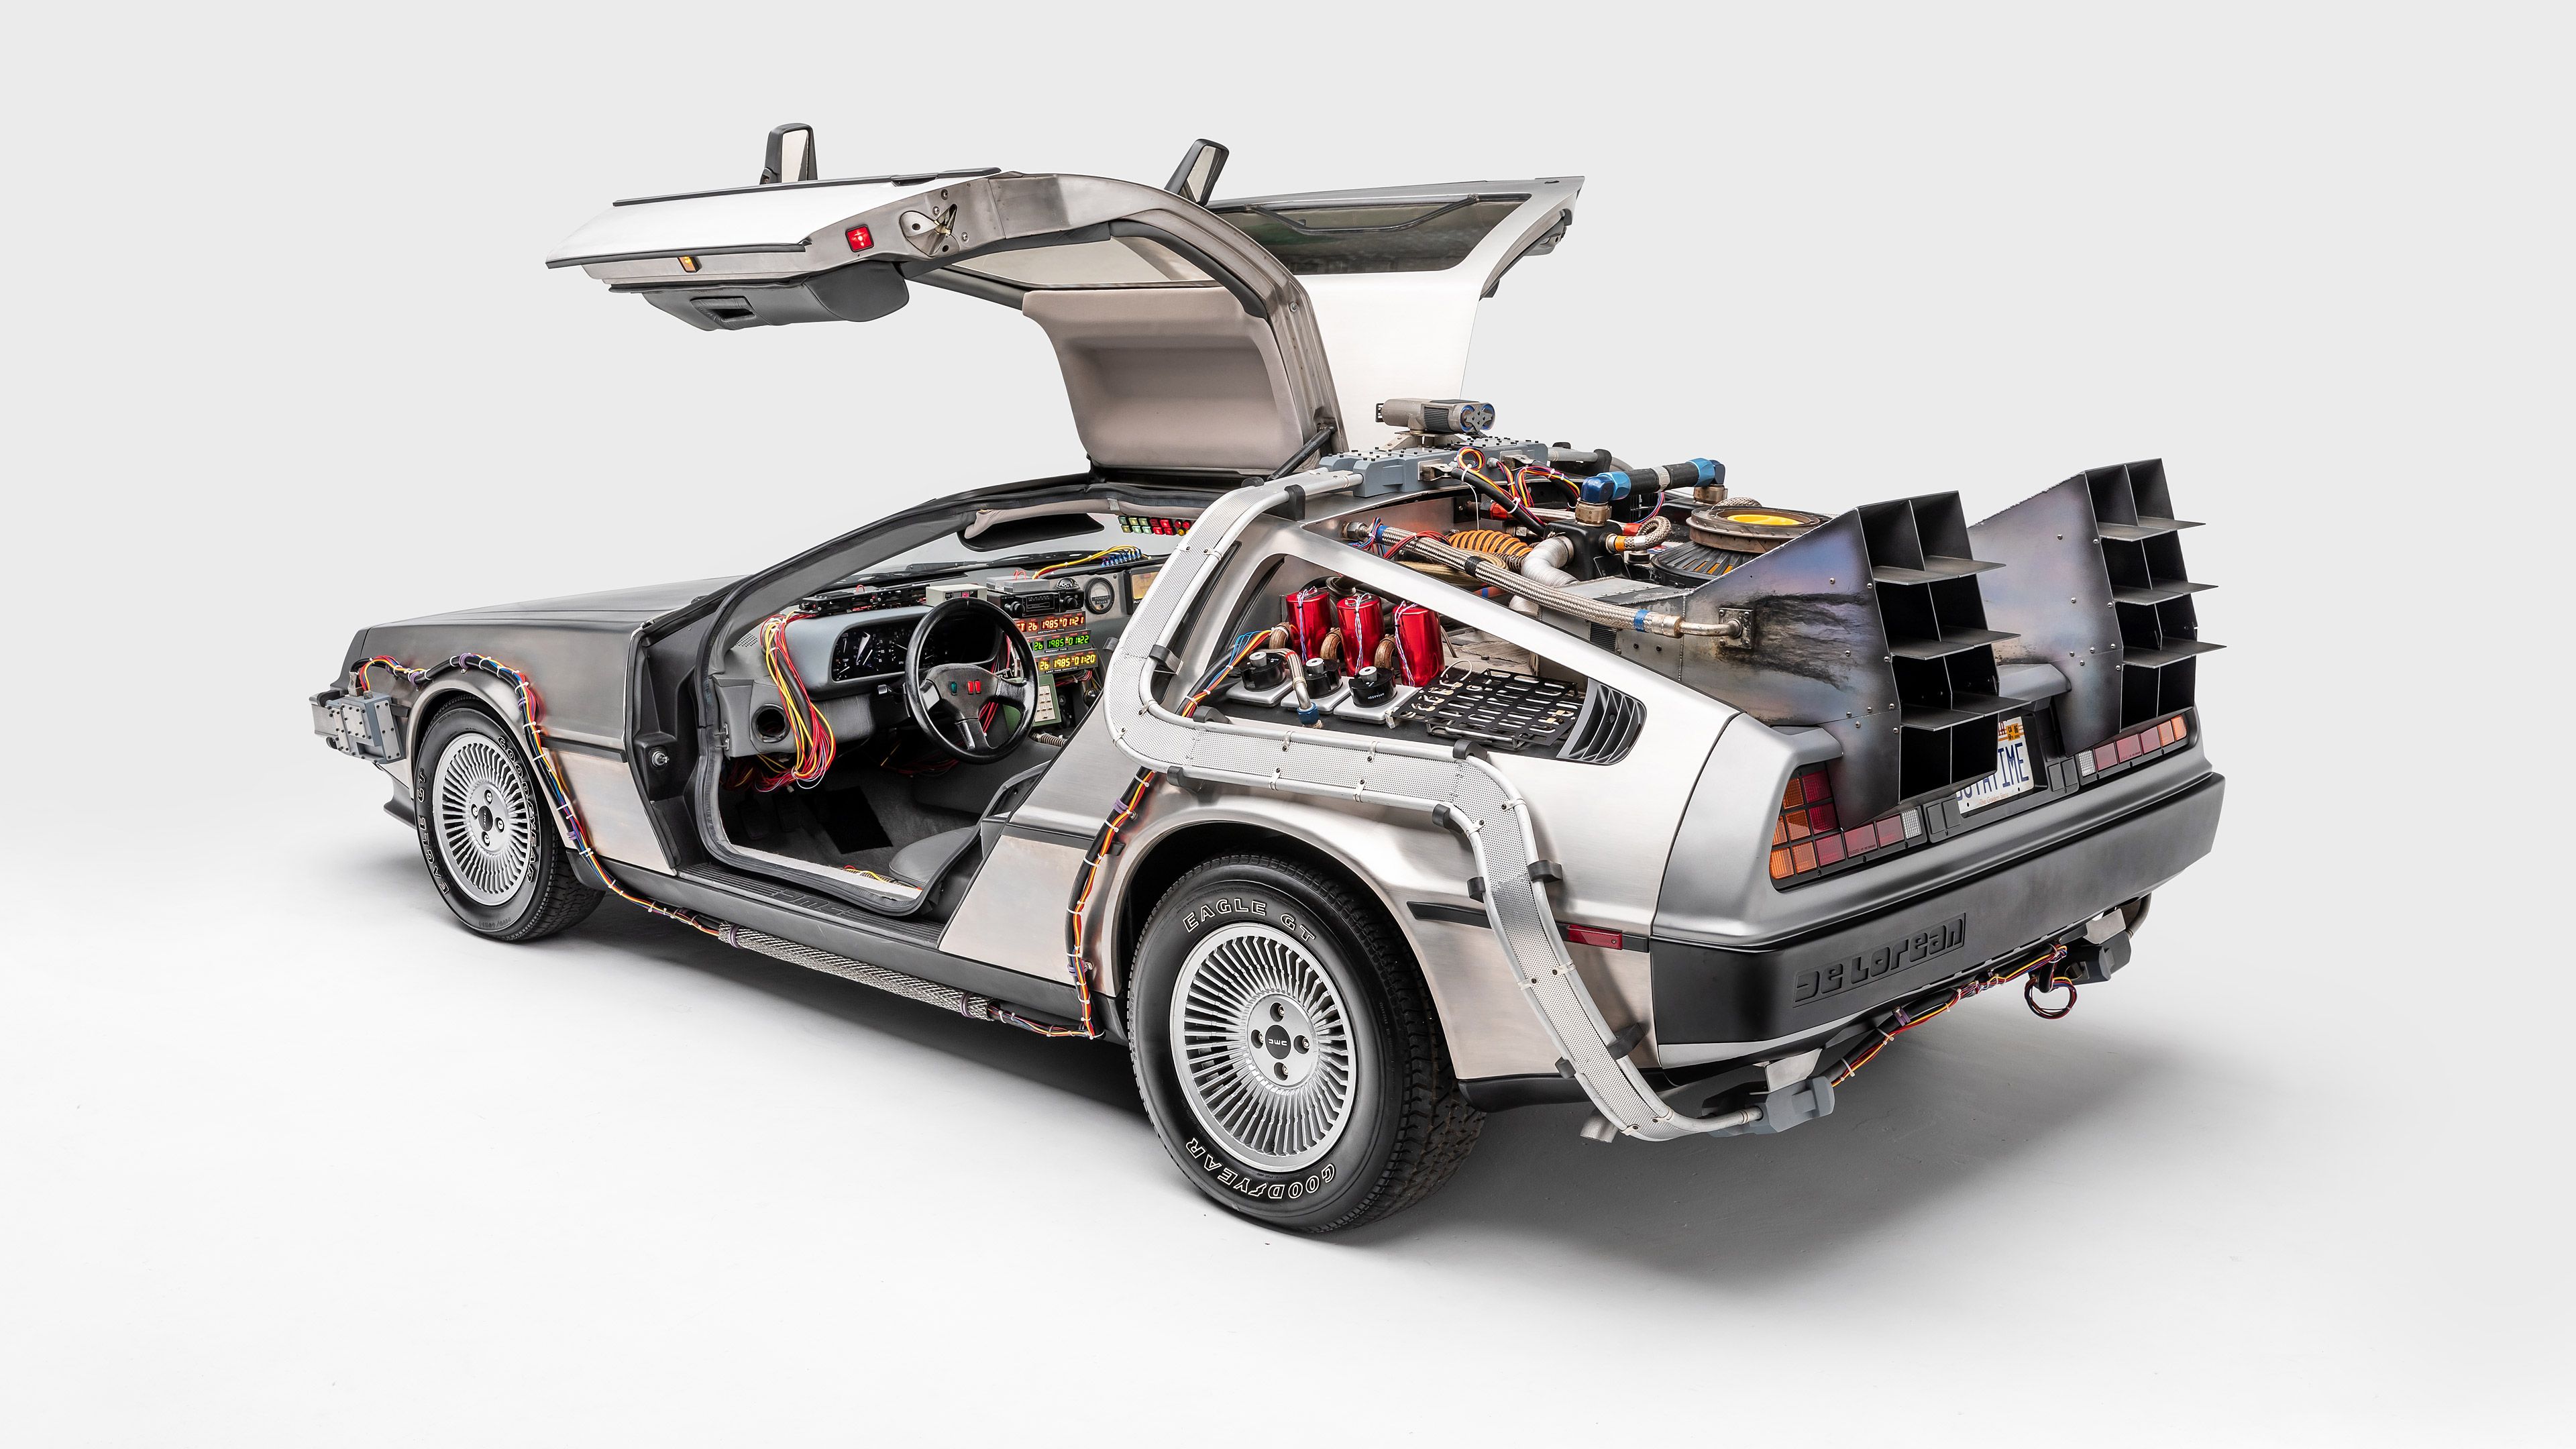 1985-DeLorean-DMC-12-Back-to-the-Future-007-2160